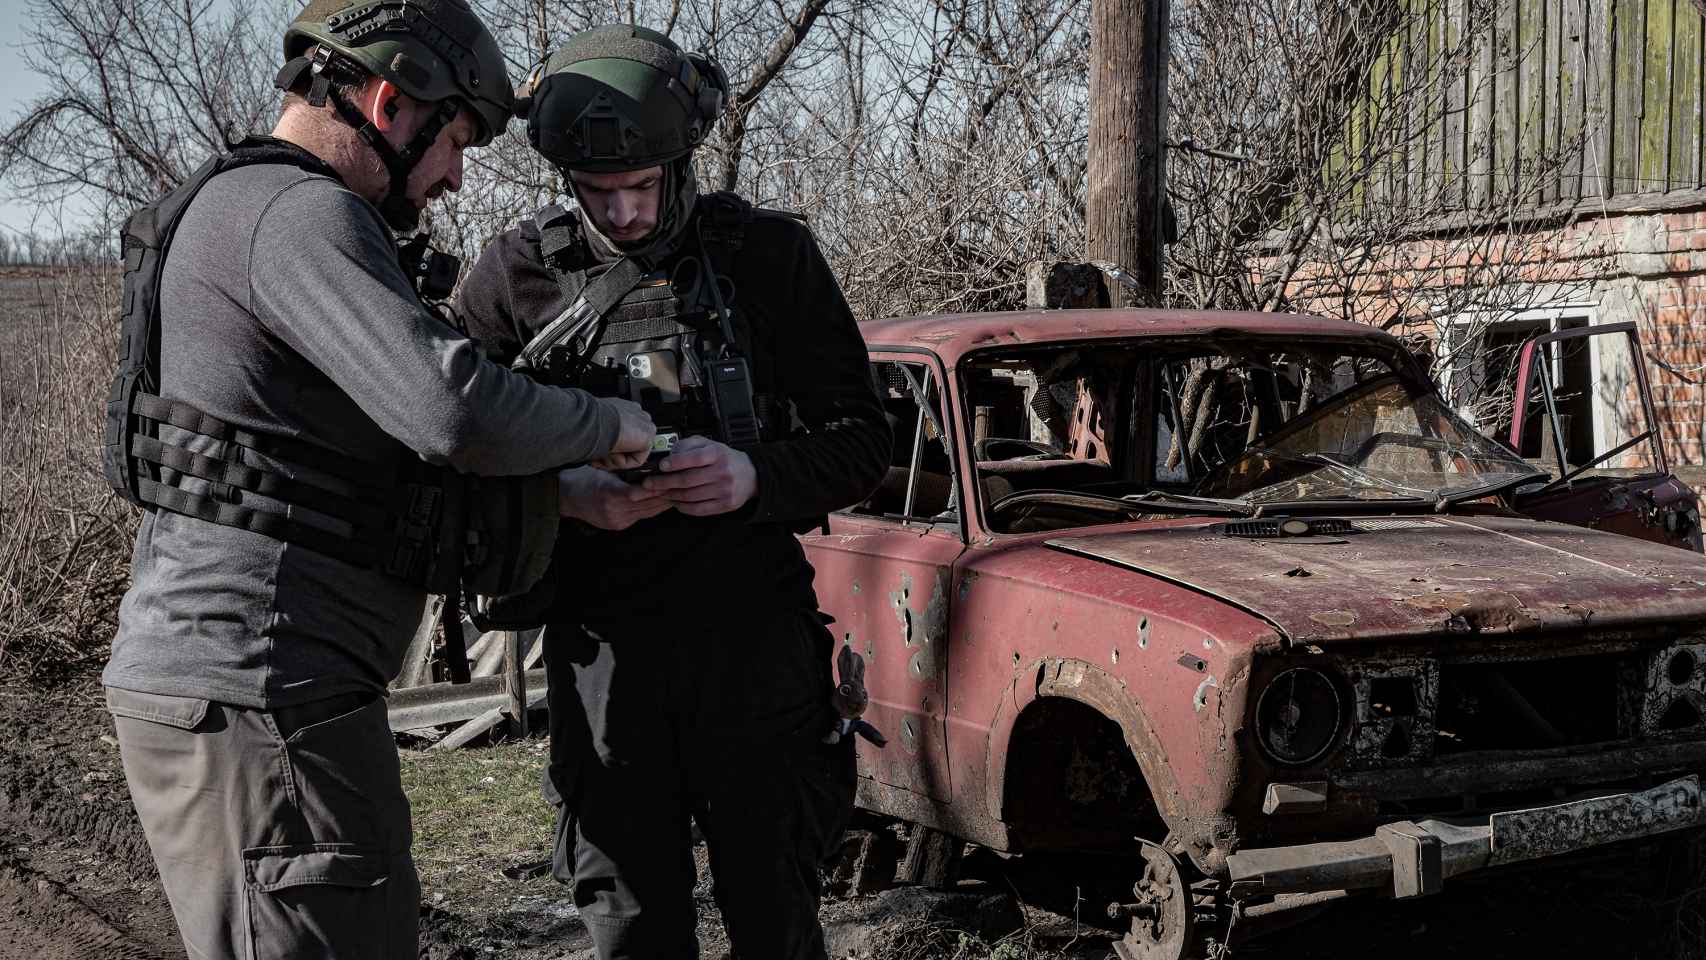 Los rescatistas, Michael (izquierda) y Artem (derencha) consultan una dirección en sus teléfonos durante una de las evacuaciones que realizan en los alrededores de Bakhmut.